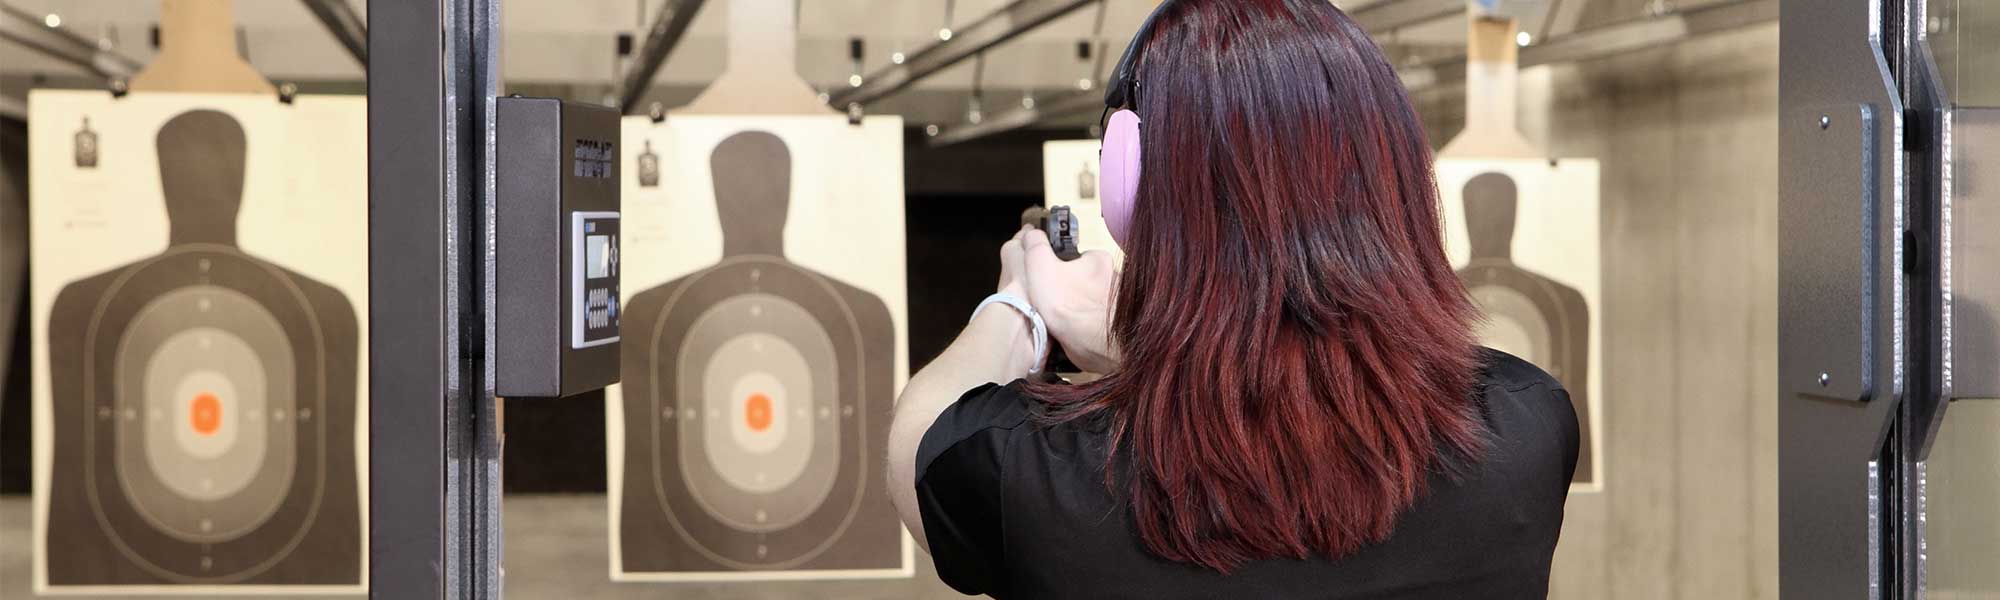 Woman Shooting Targets